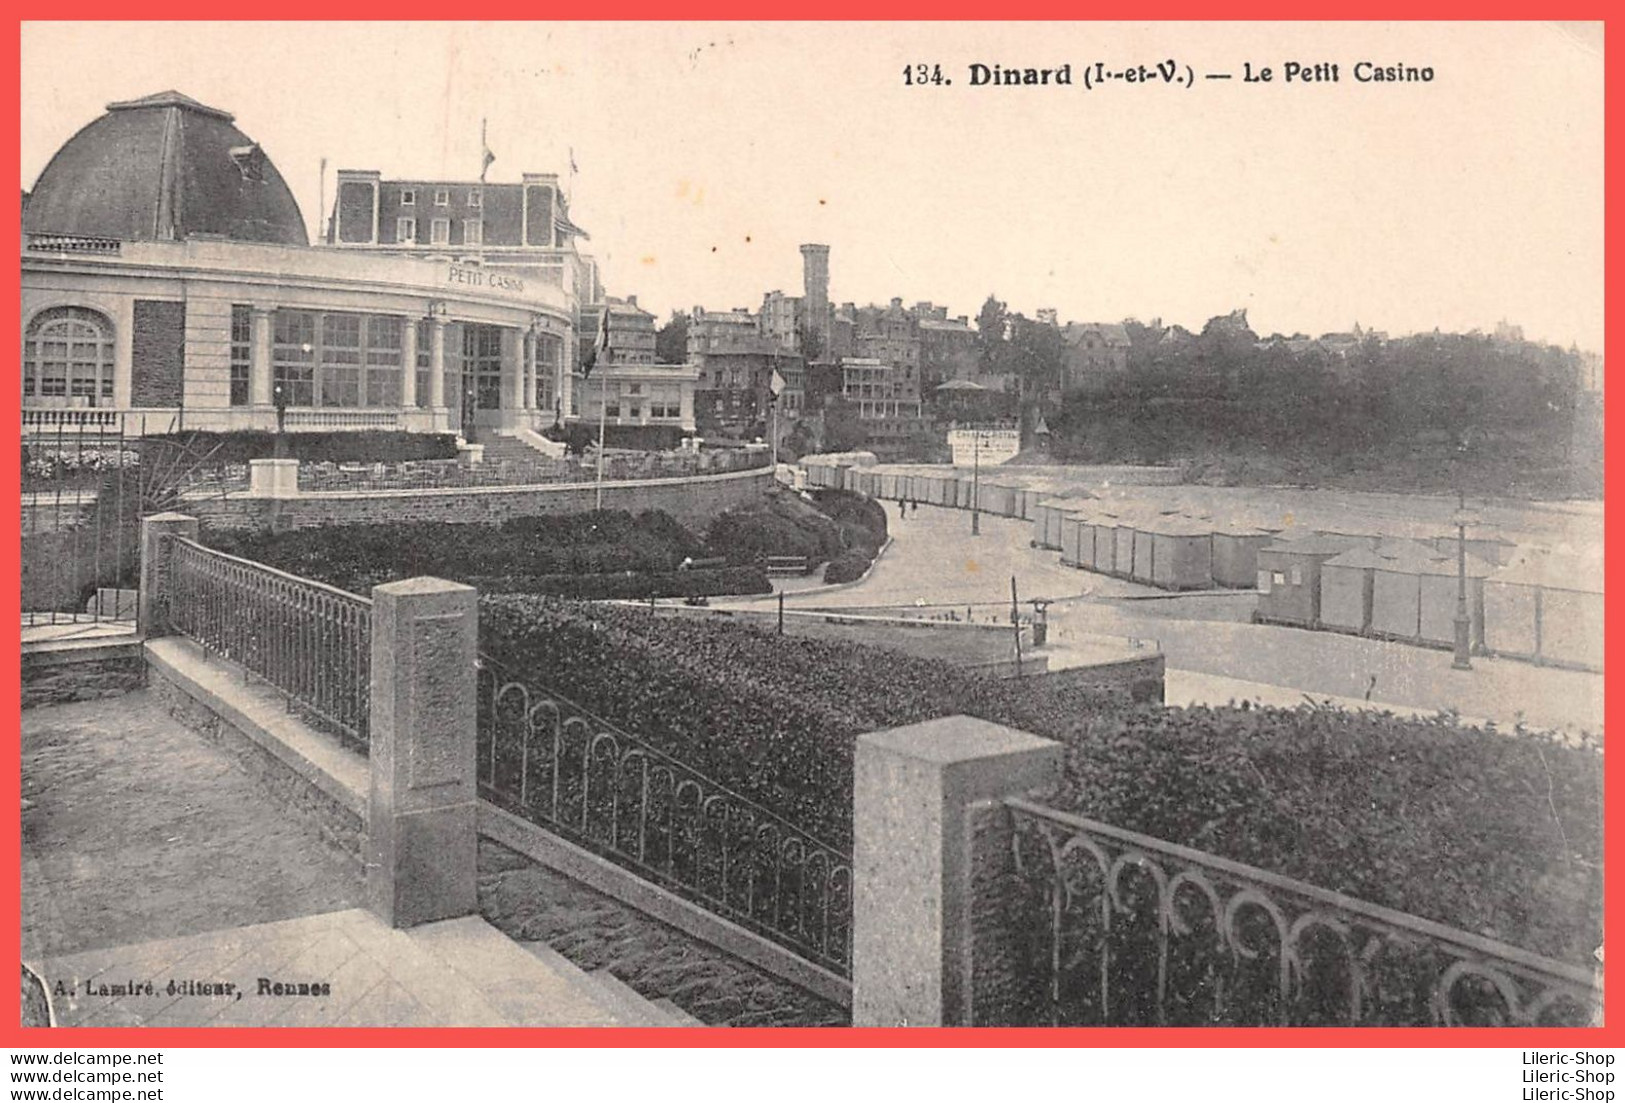 134. Dinard (I.-et-V.) Cpa 1929 Le Petit Casino -  Lamiré, Éditeur, Rennes - Dinard